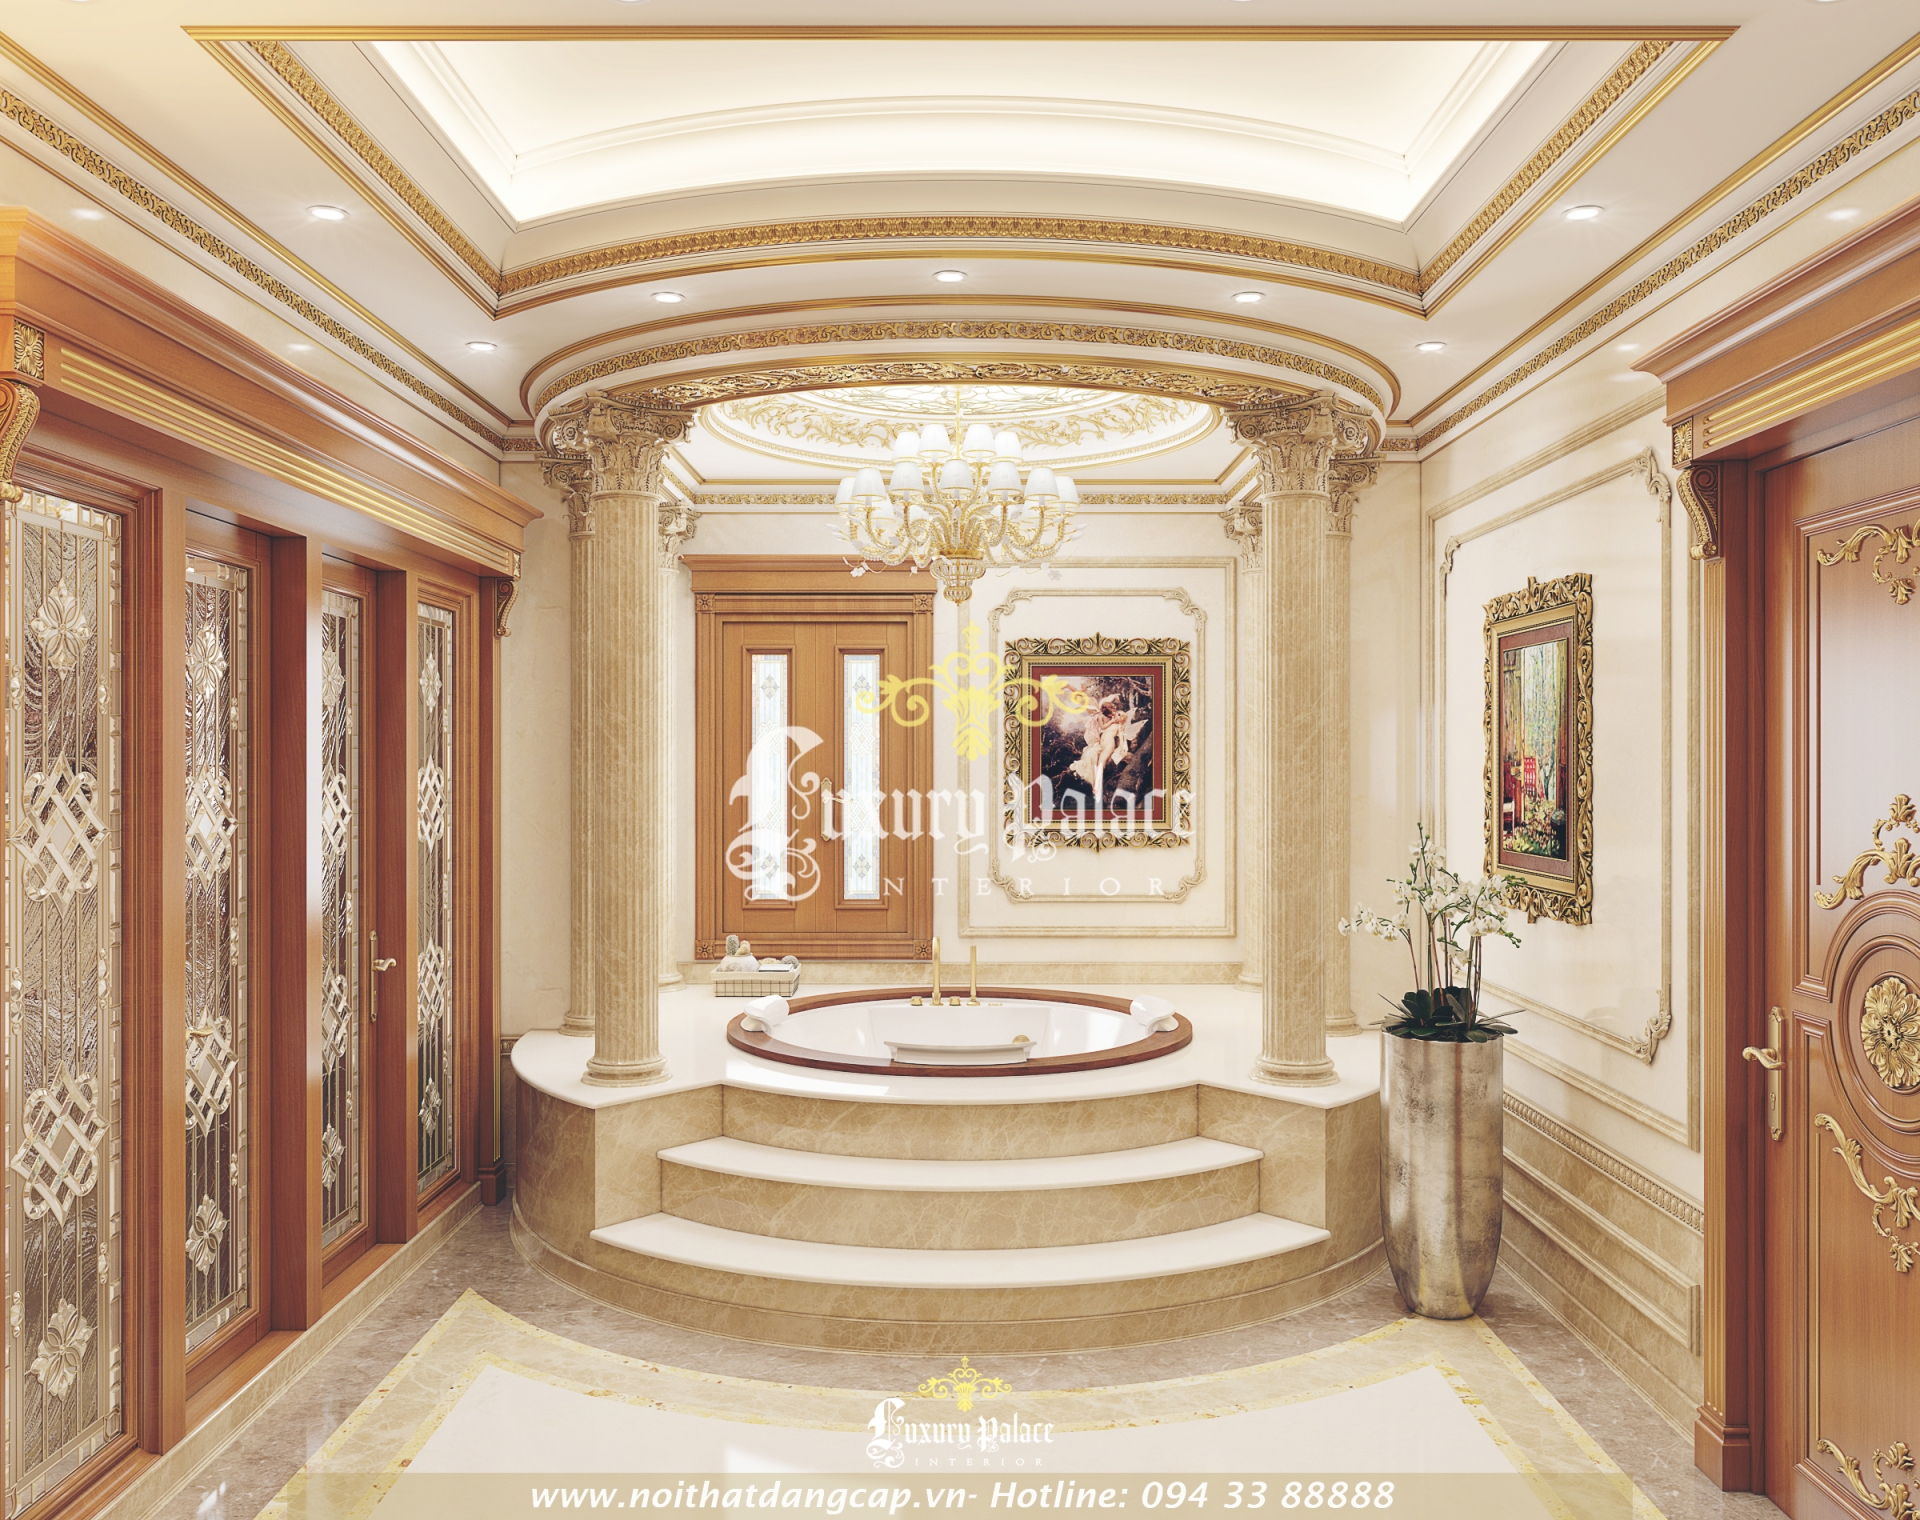 Nội thất phòng tắm cổ điển biệt thự châu Âu cổ điển 